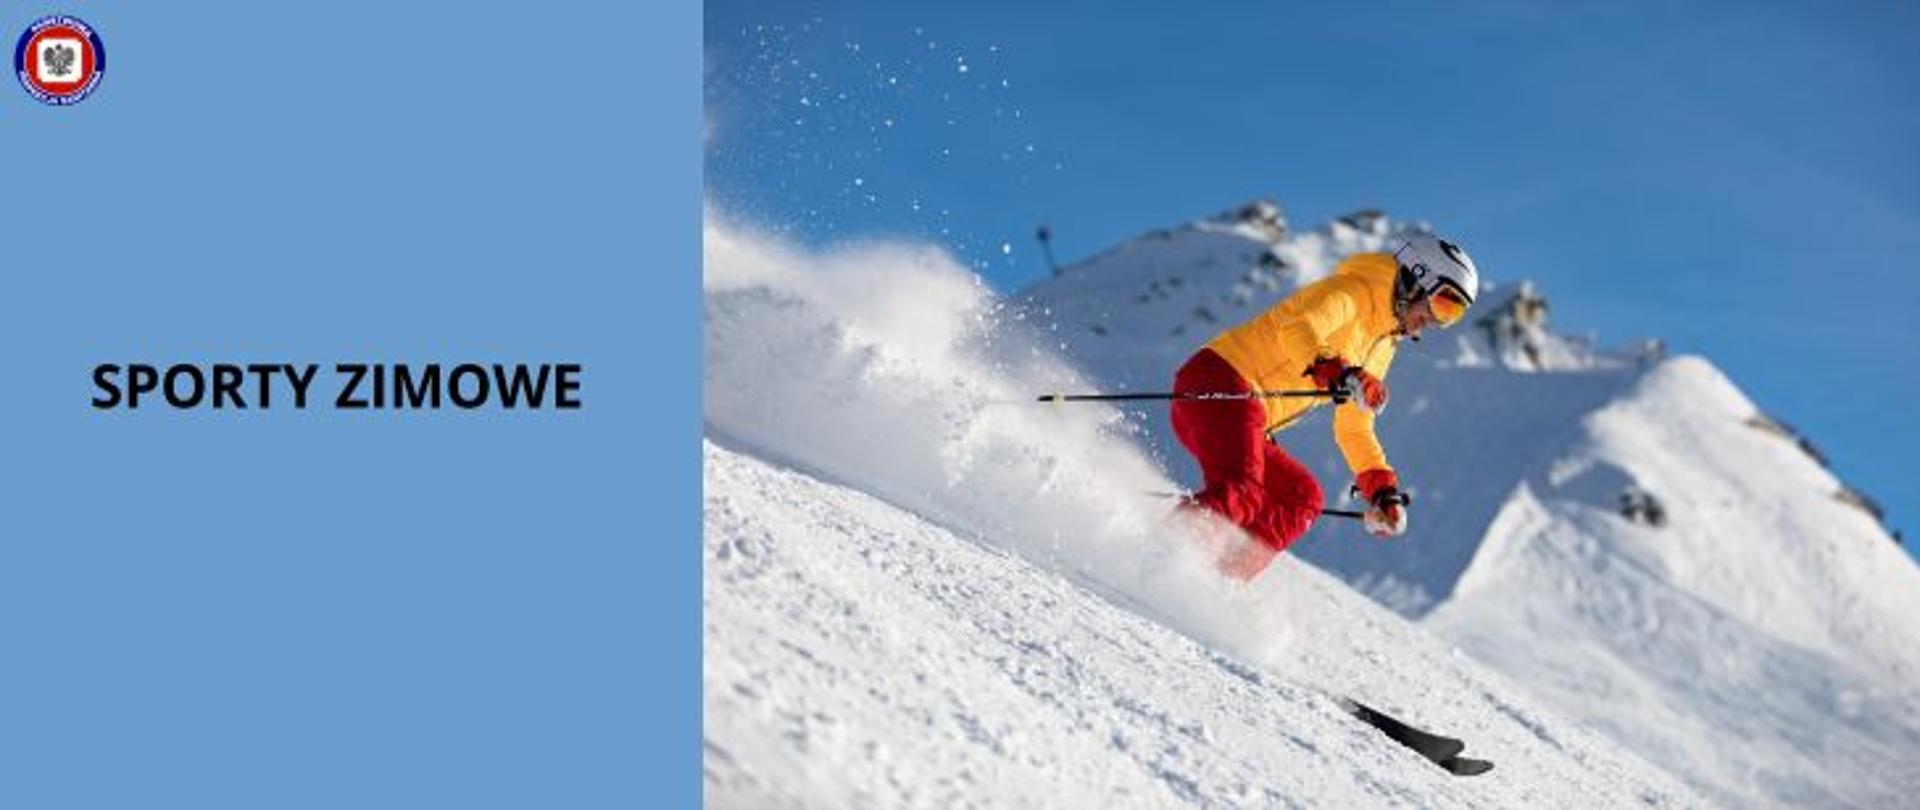 Mężczyzna w żółtej kurtce, czerwonych spodniach i białym kasku zjeżdża na nartach ze stoku. Z Lewej strony na niebieskim tle czarny napis Sporty Zimowe a w lewym górnym rogu logo Państwowej Inspekcji Sanitarnej. 